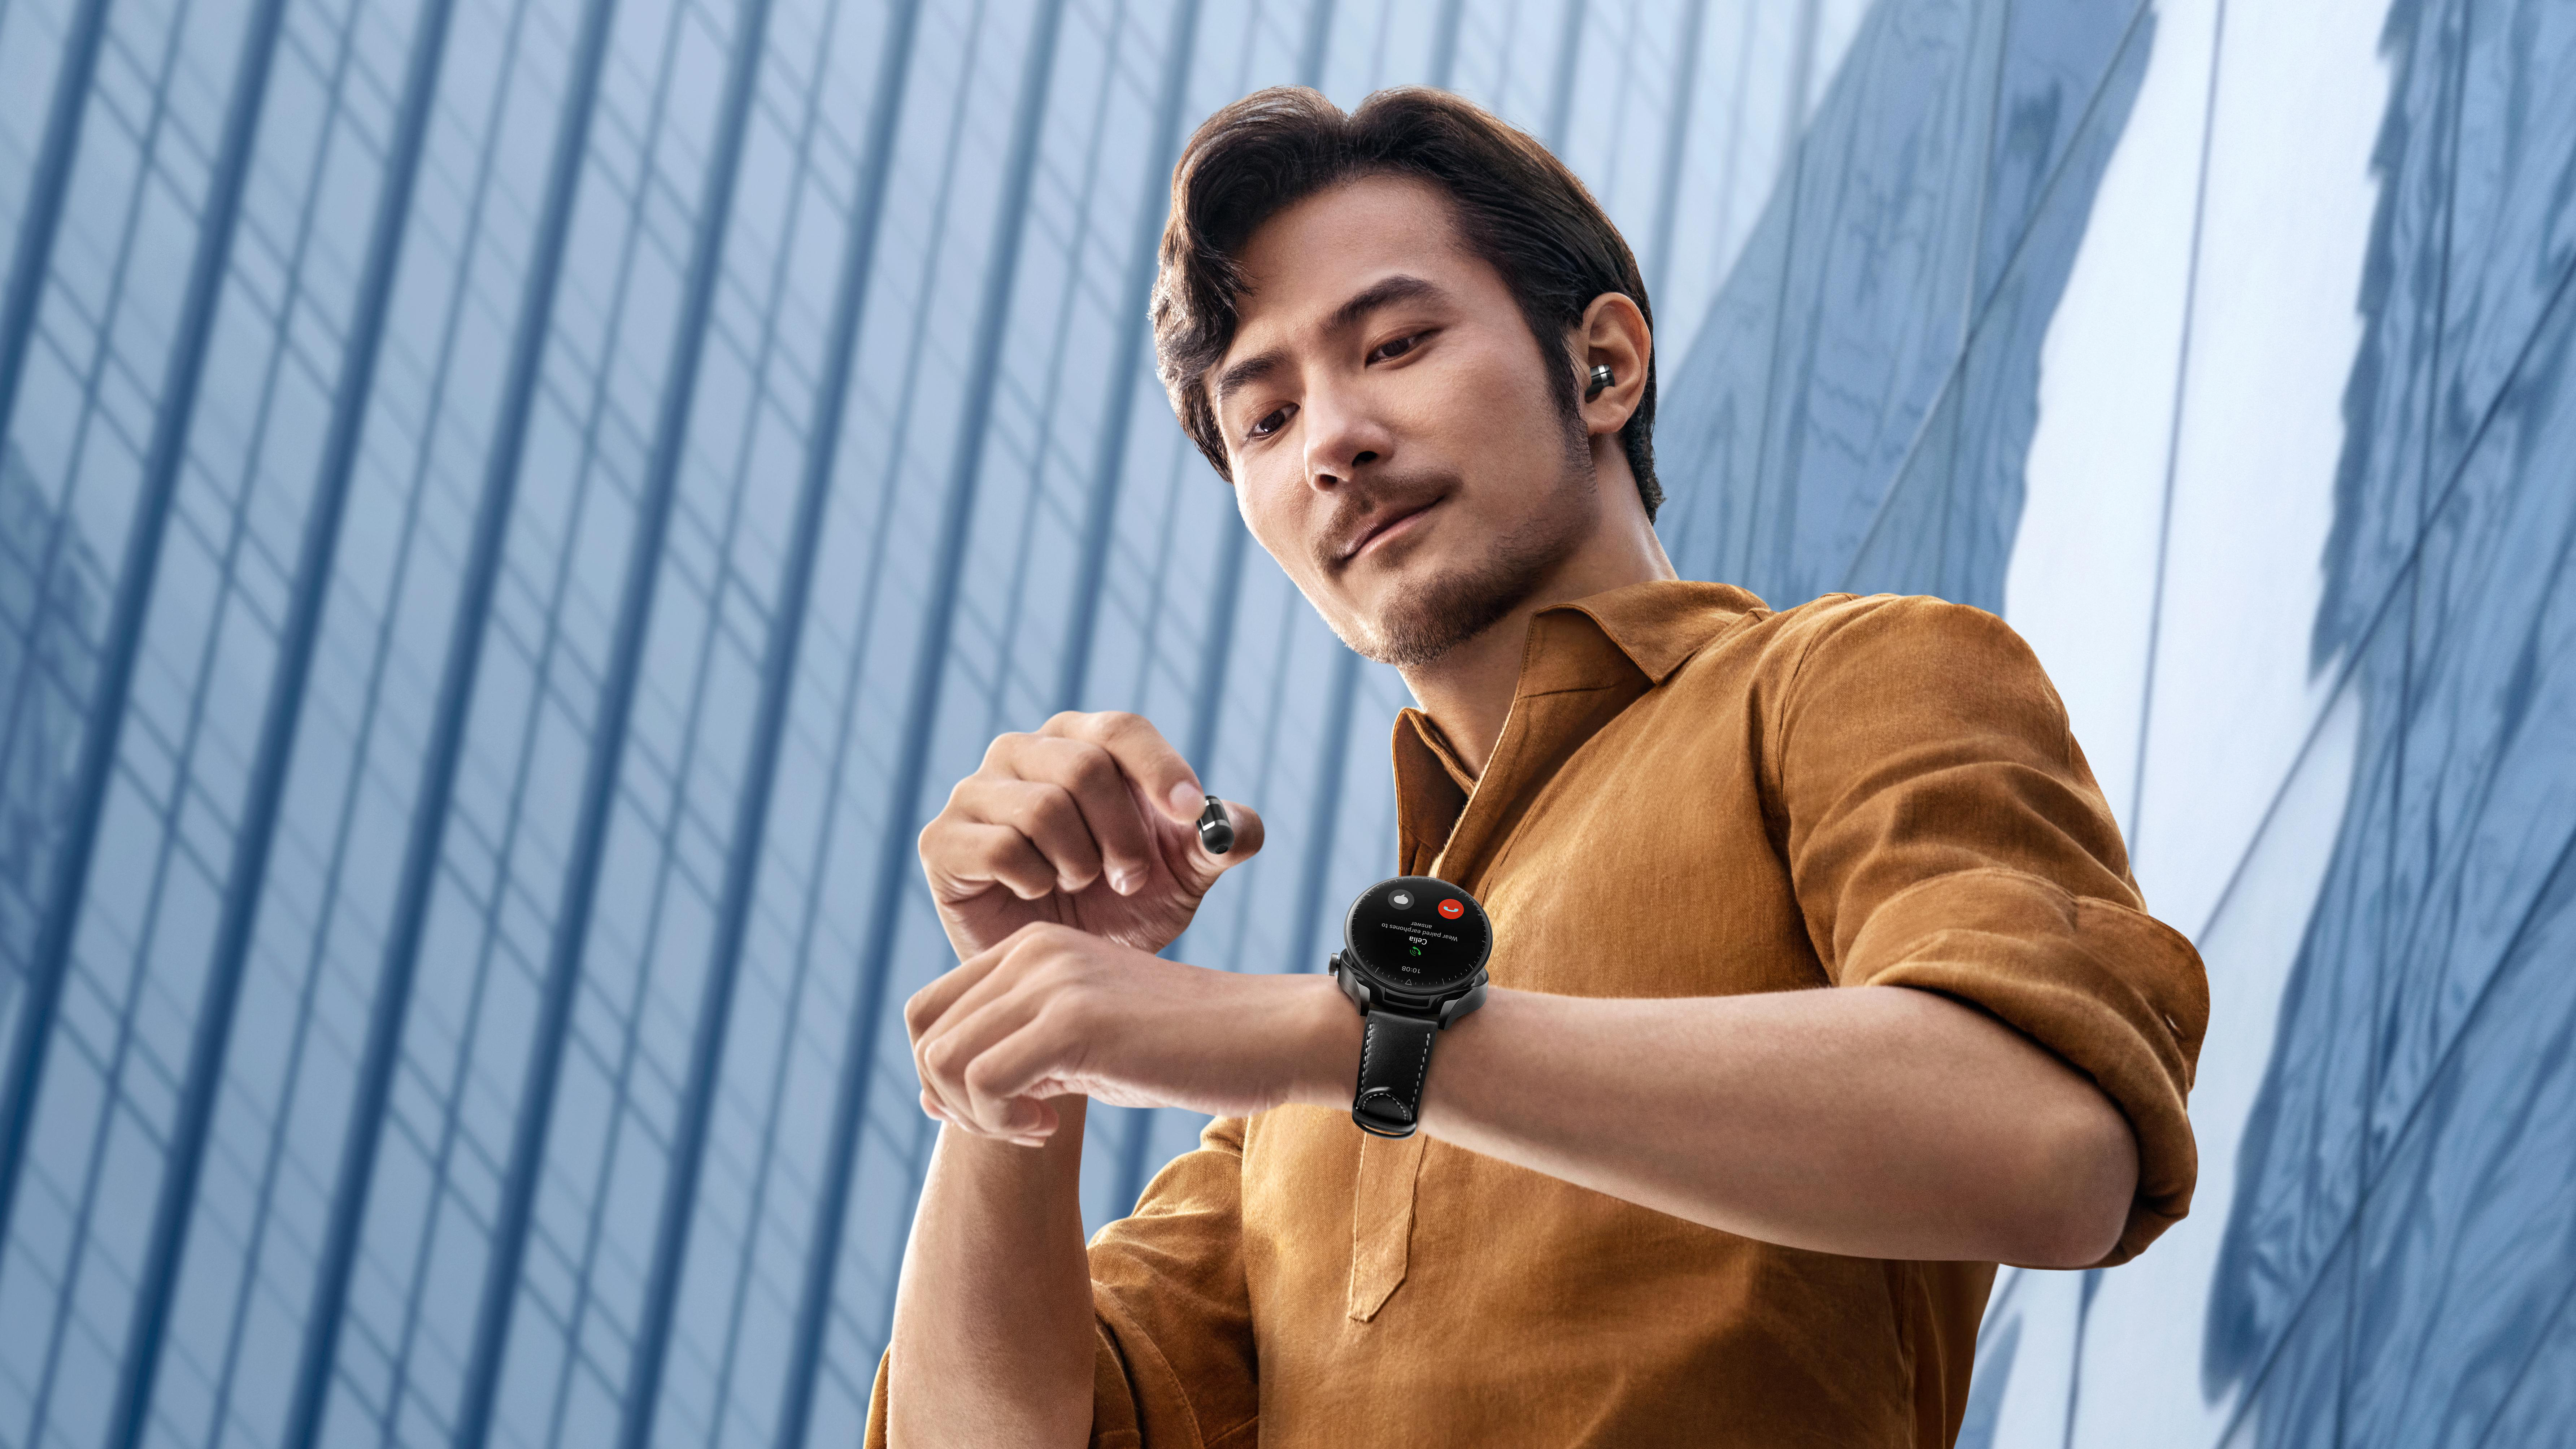 HUAWEI Buds Smartwatch Leder, Schwarz 140-210, WATCH